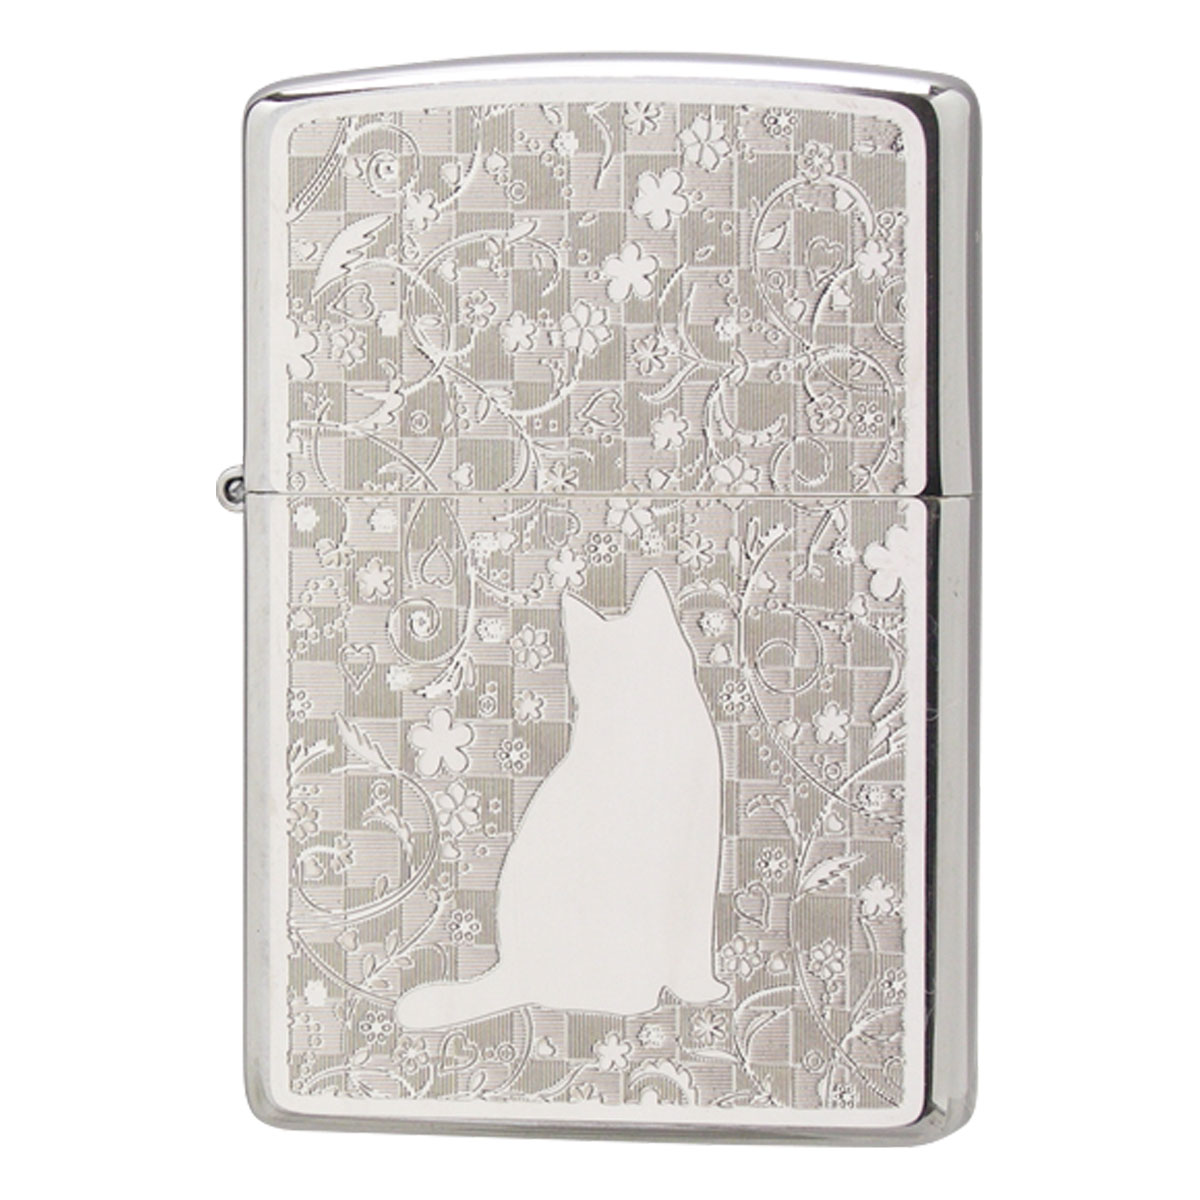 zippo ライター ジッポーライター 名入れ 猫 ネコ ねこ 動物 アニマル 200 かわいい フラットボトム メタルプレート ホワイトニッケル  ギフト プレゼント 贈り物